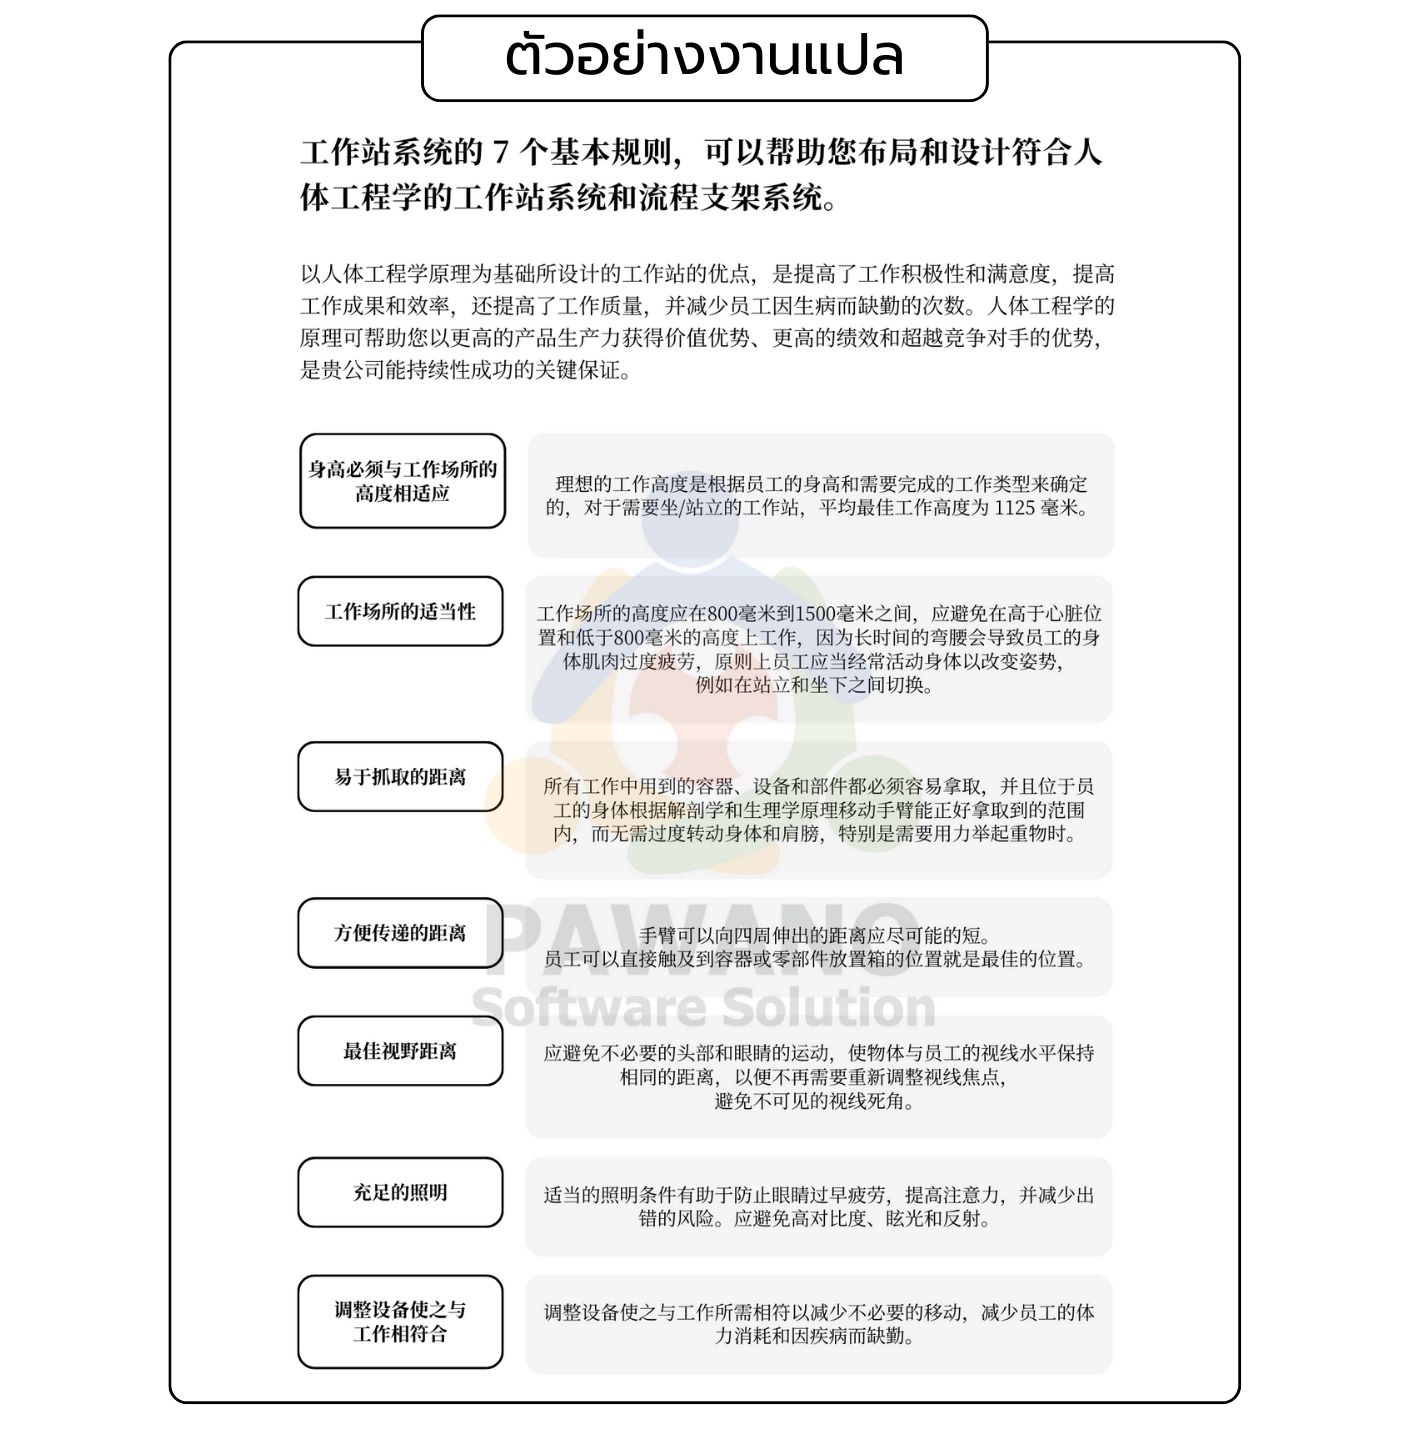 ตัวอย่างงานแปลคู่มือ ภาษาจีน